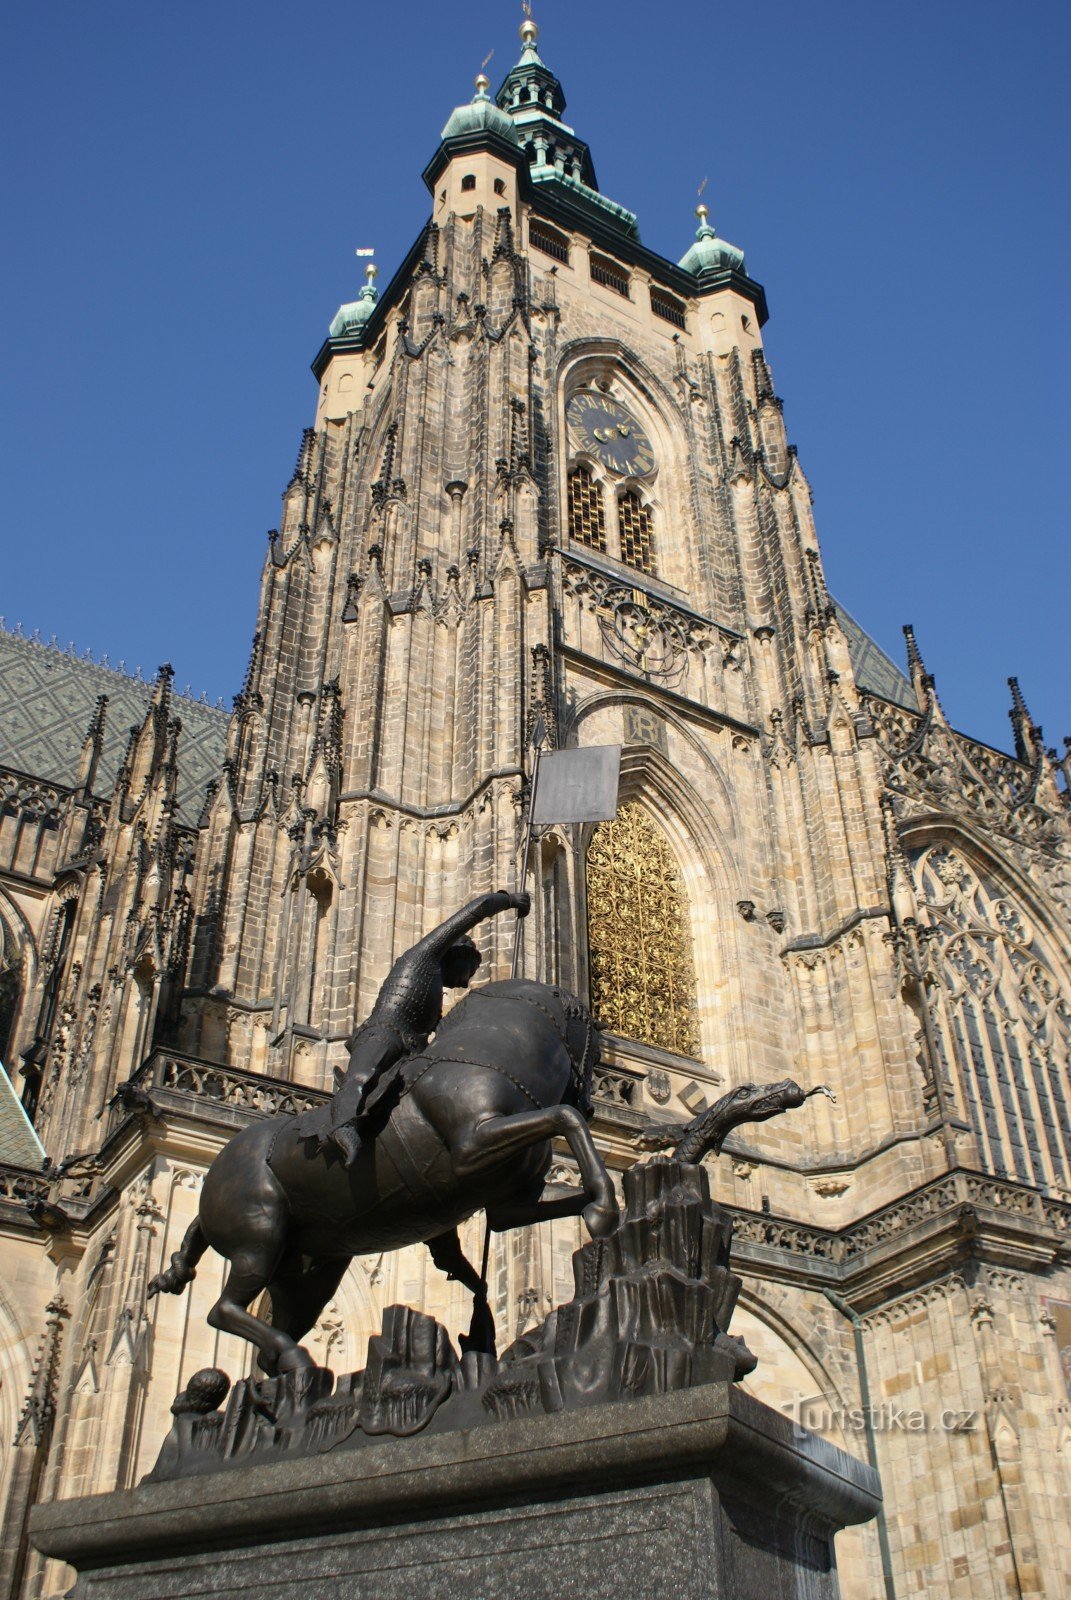 Praga - torre do sino da catedral Great South Tower (Castelo de Praga)